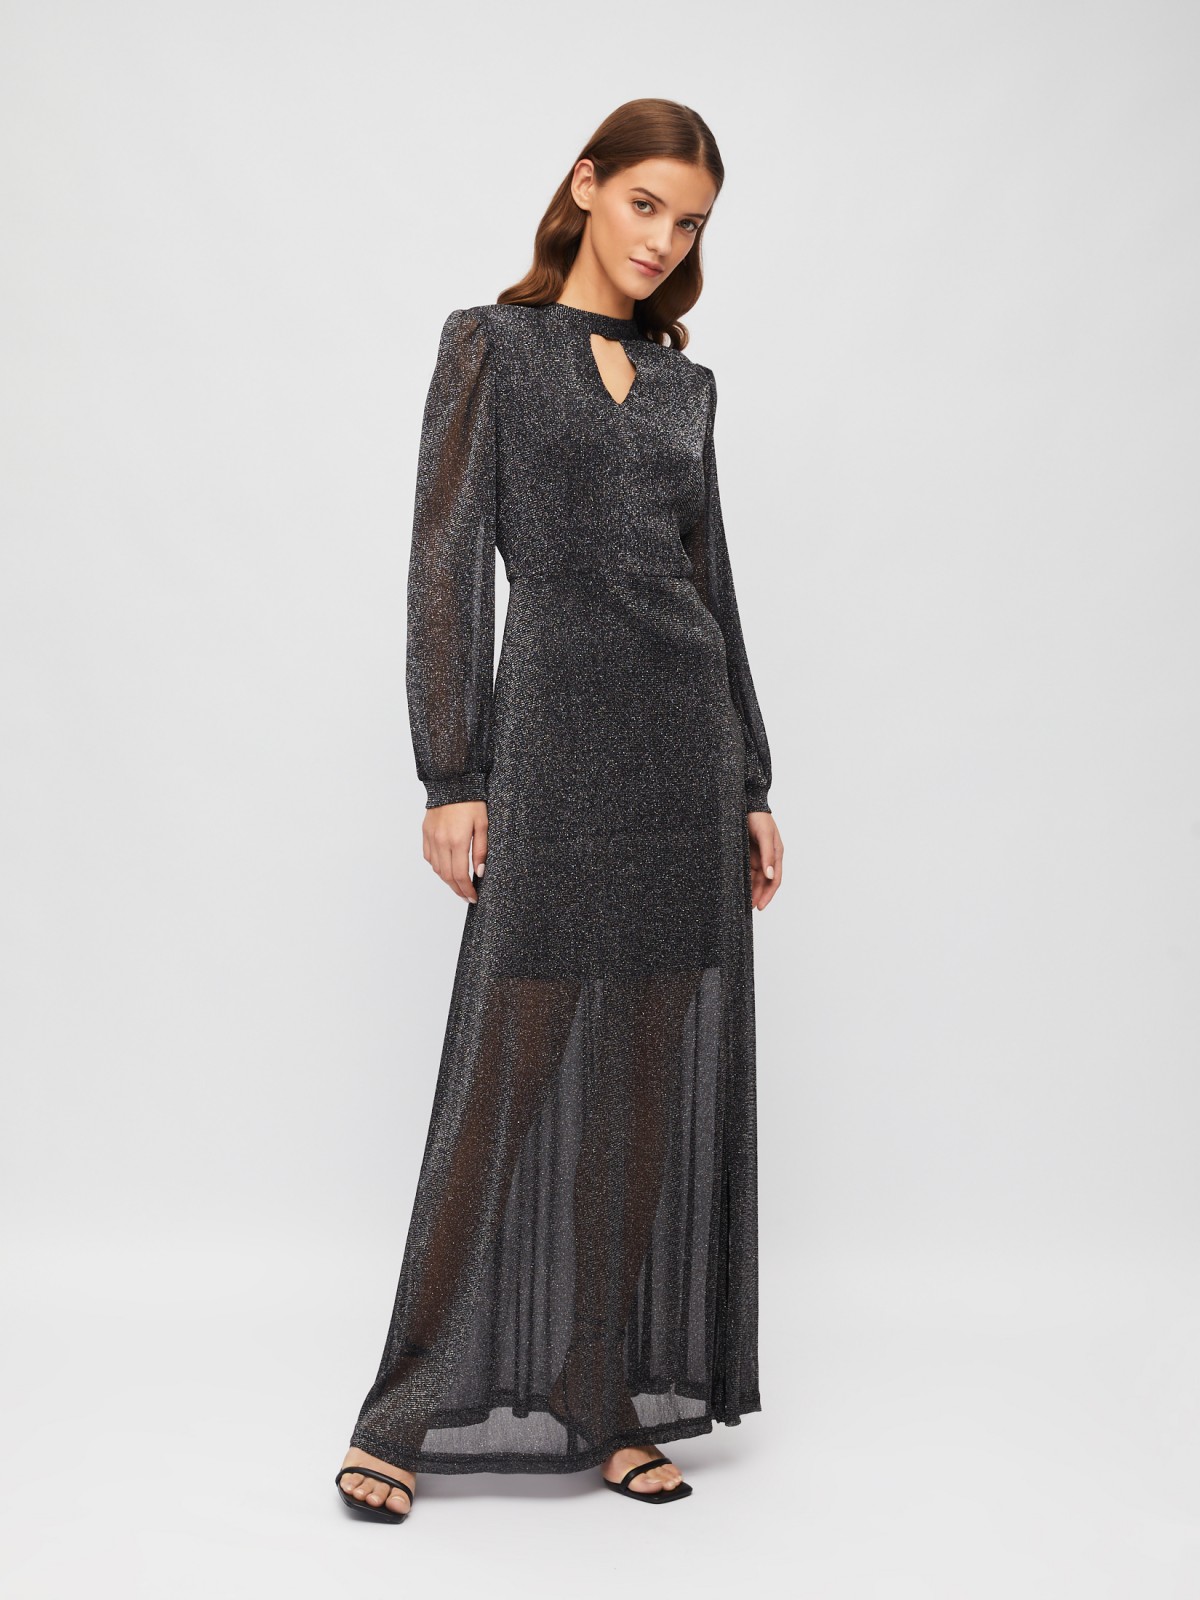 Полупрозрачное платье макси с разрезом на подоле и люрексом zolla 023458159233, цвет черный, размер S